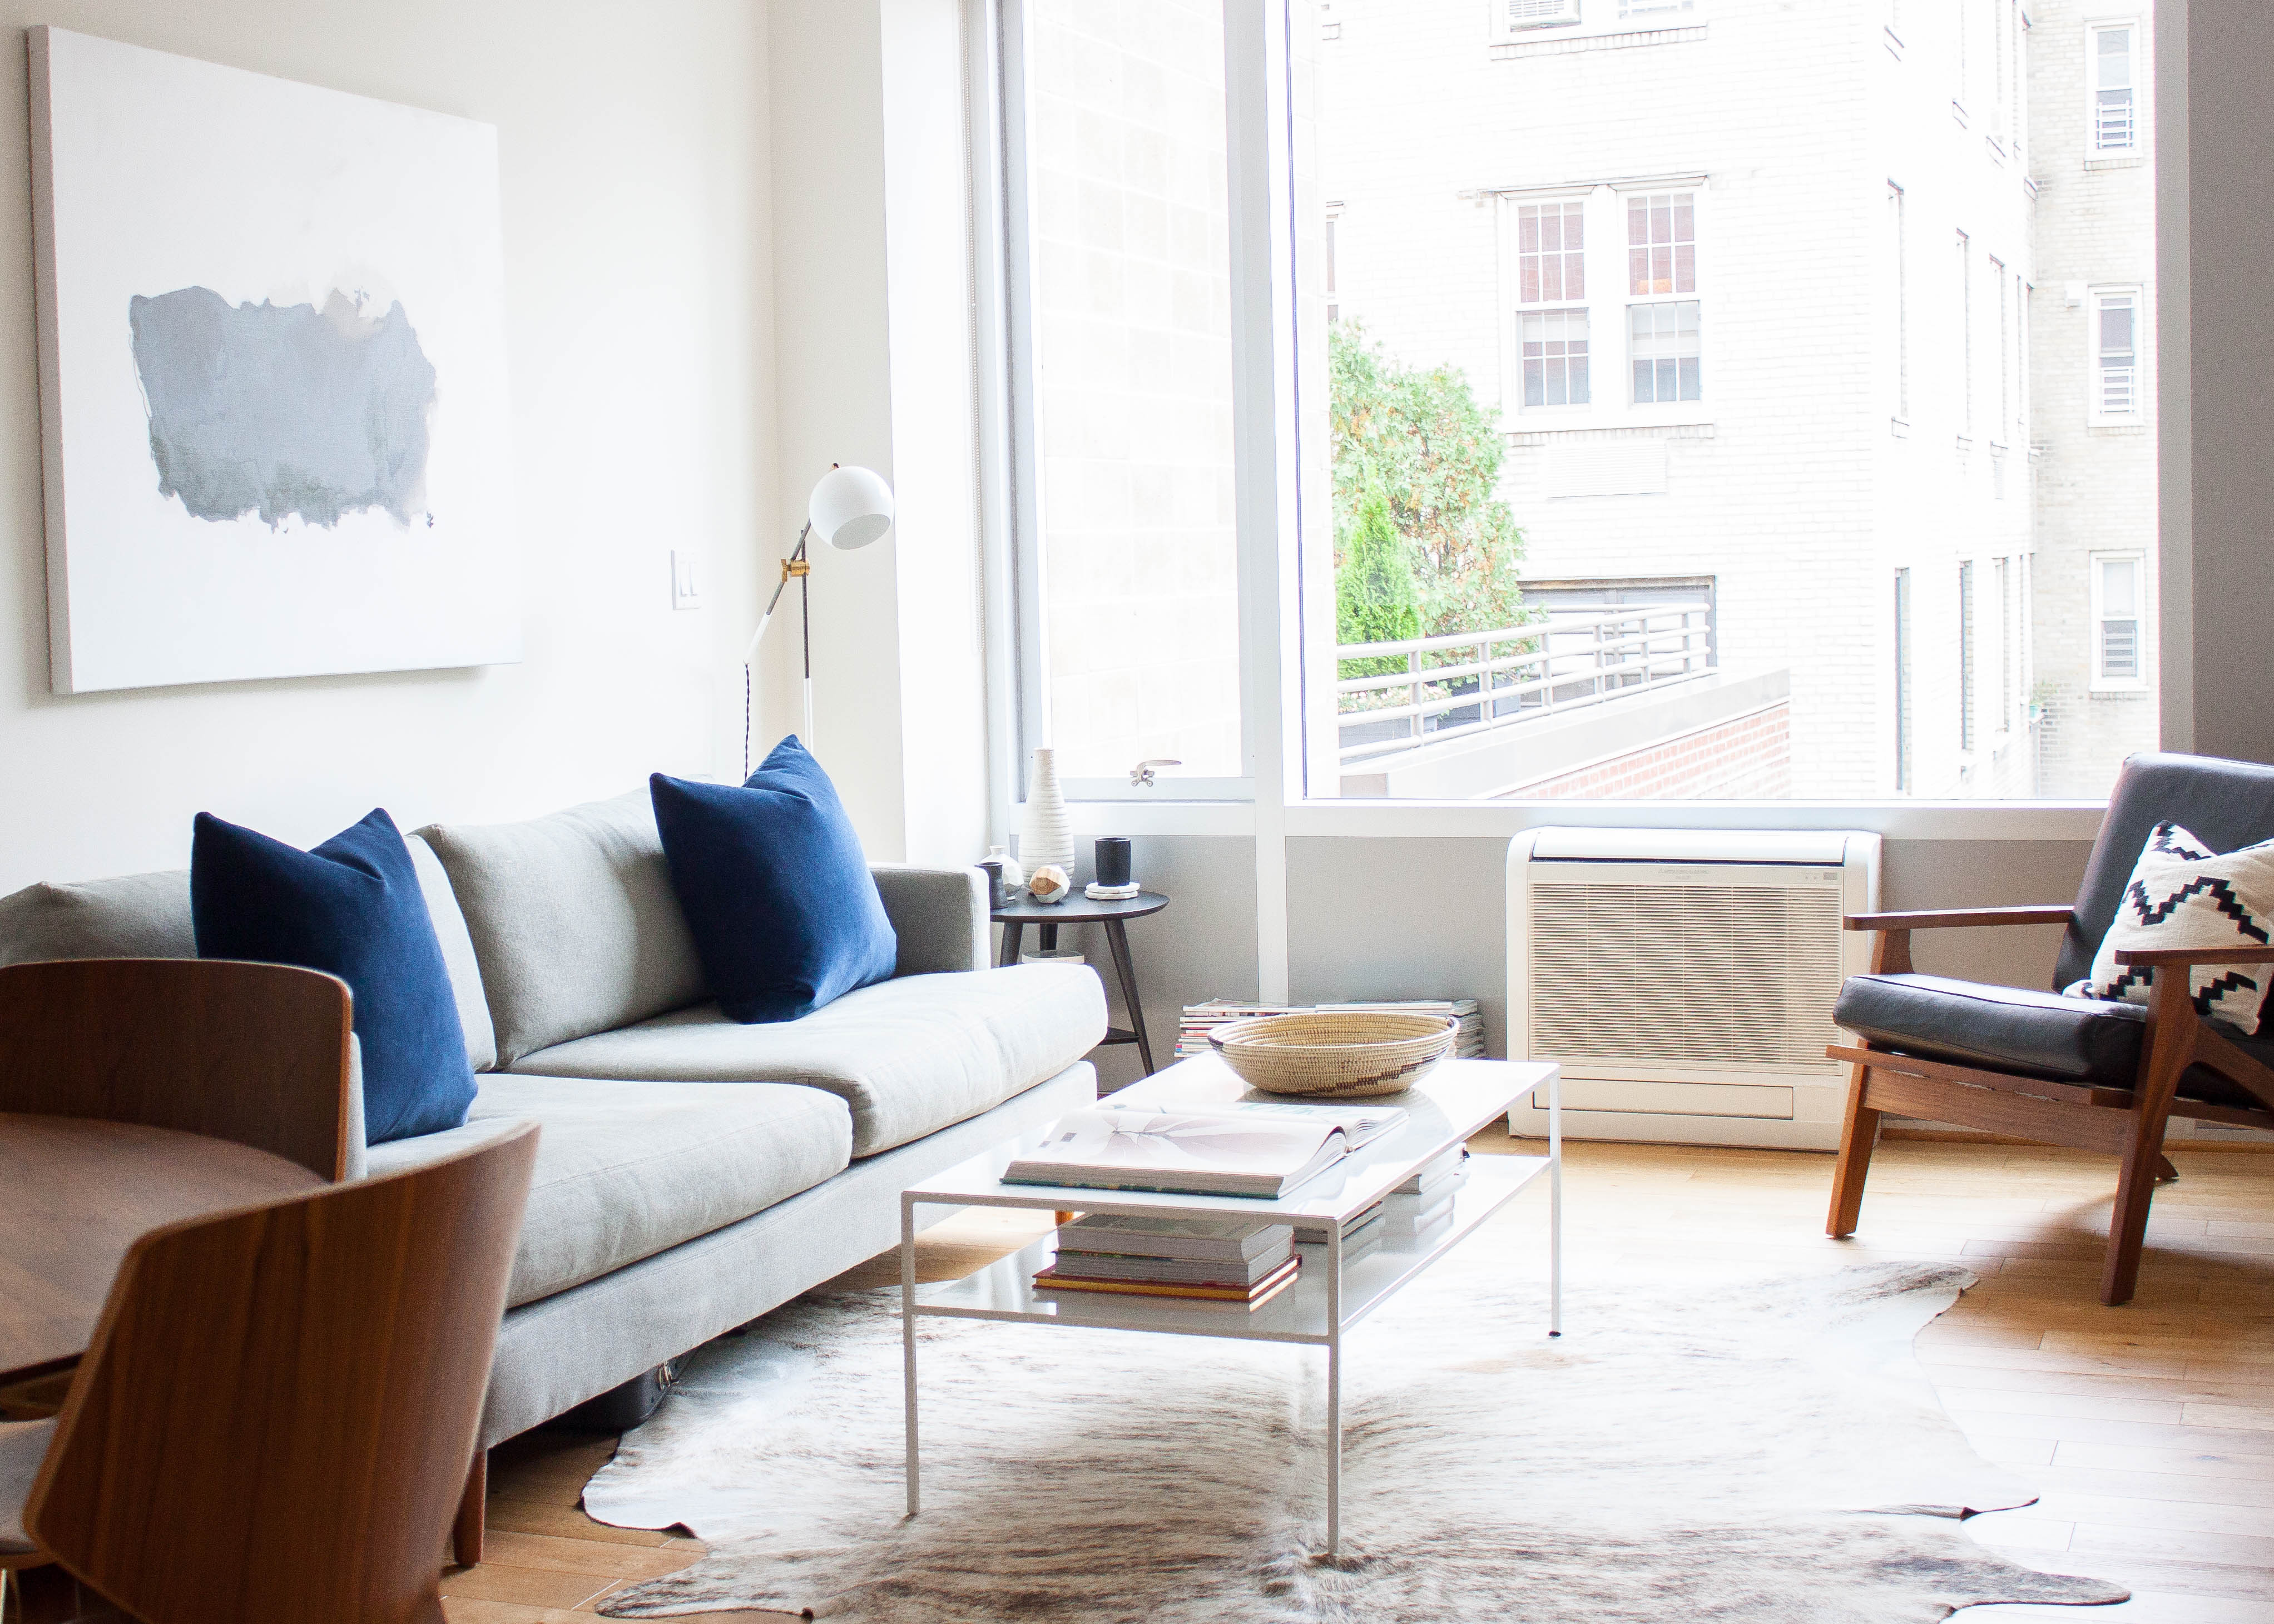 36 Small Living Room Ideas How To, Interior Decor Living Room Ideas